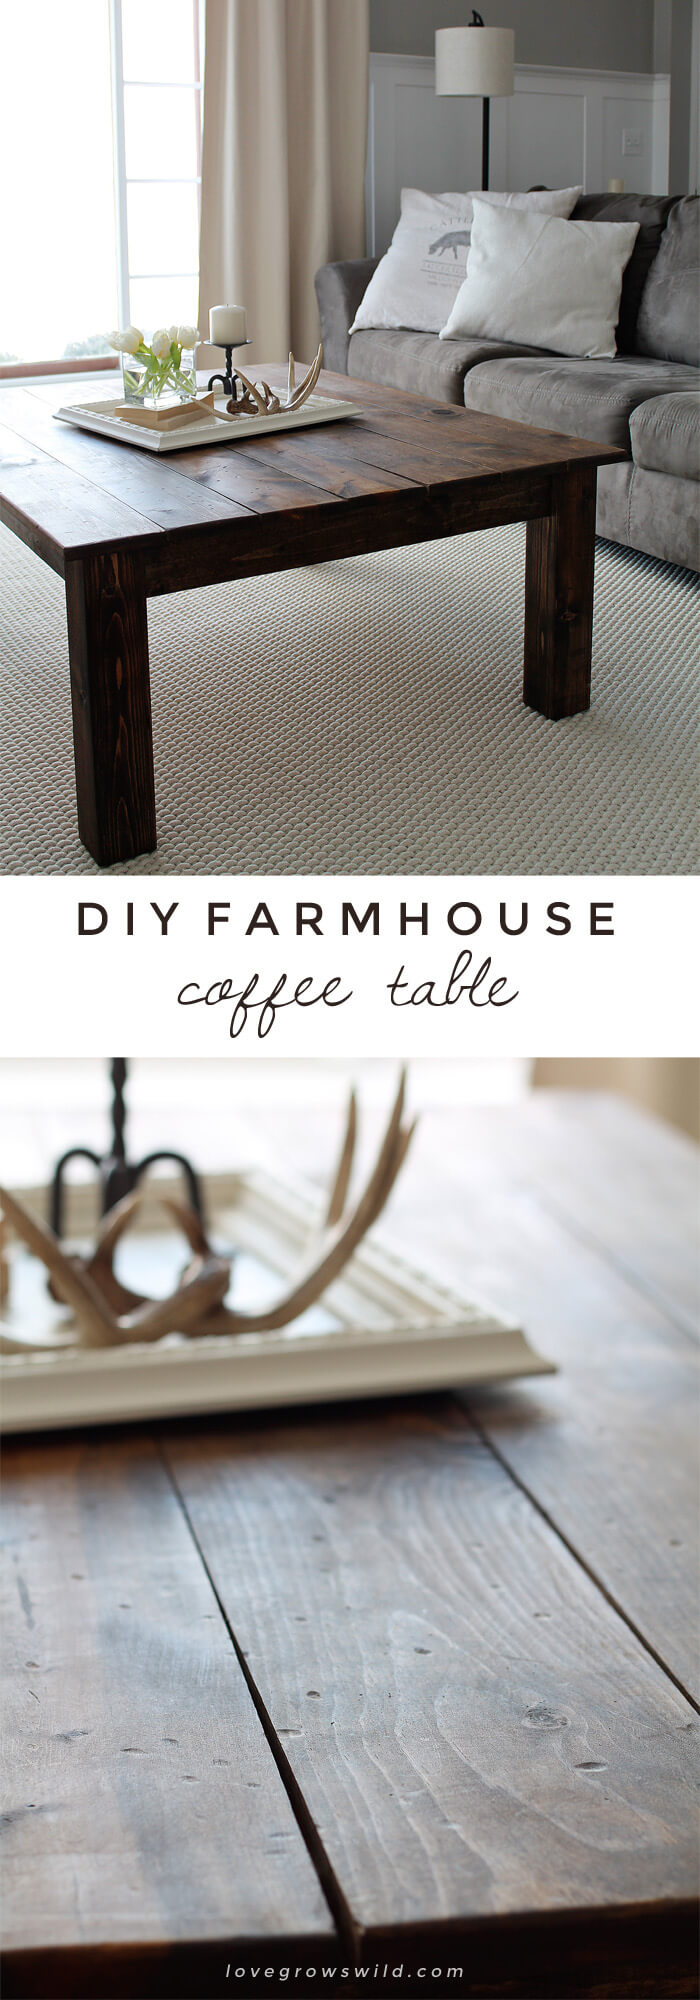 14 farmhouse coffee table ideas